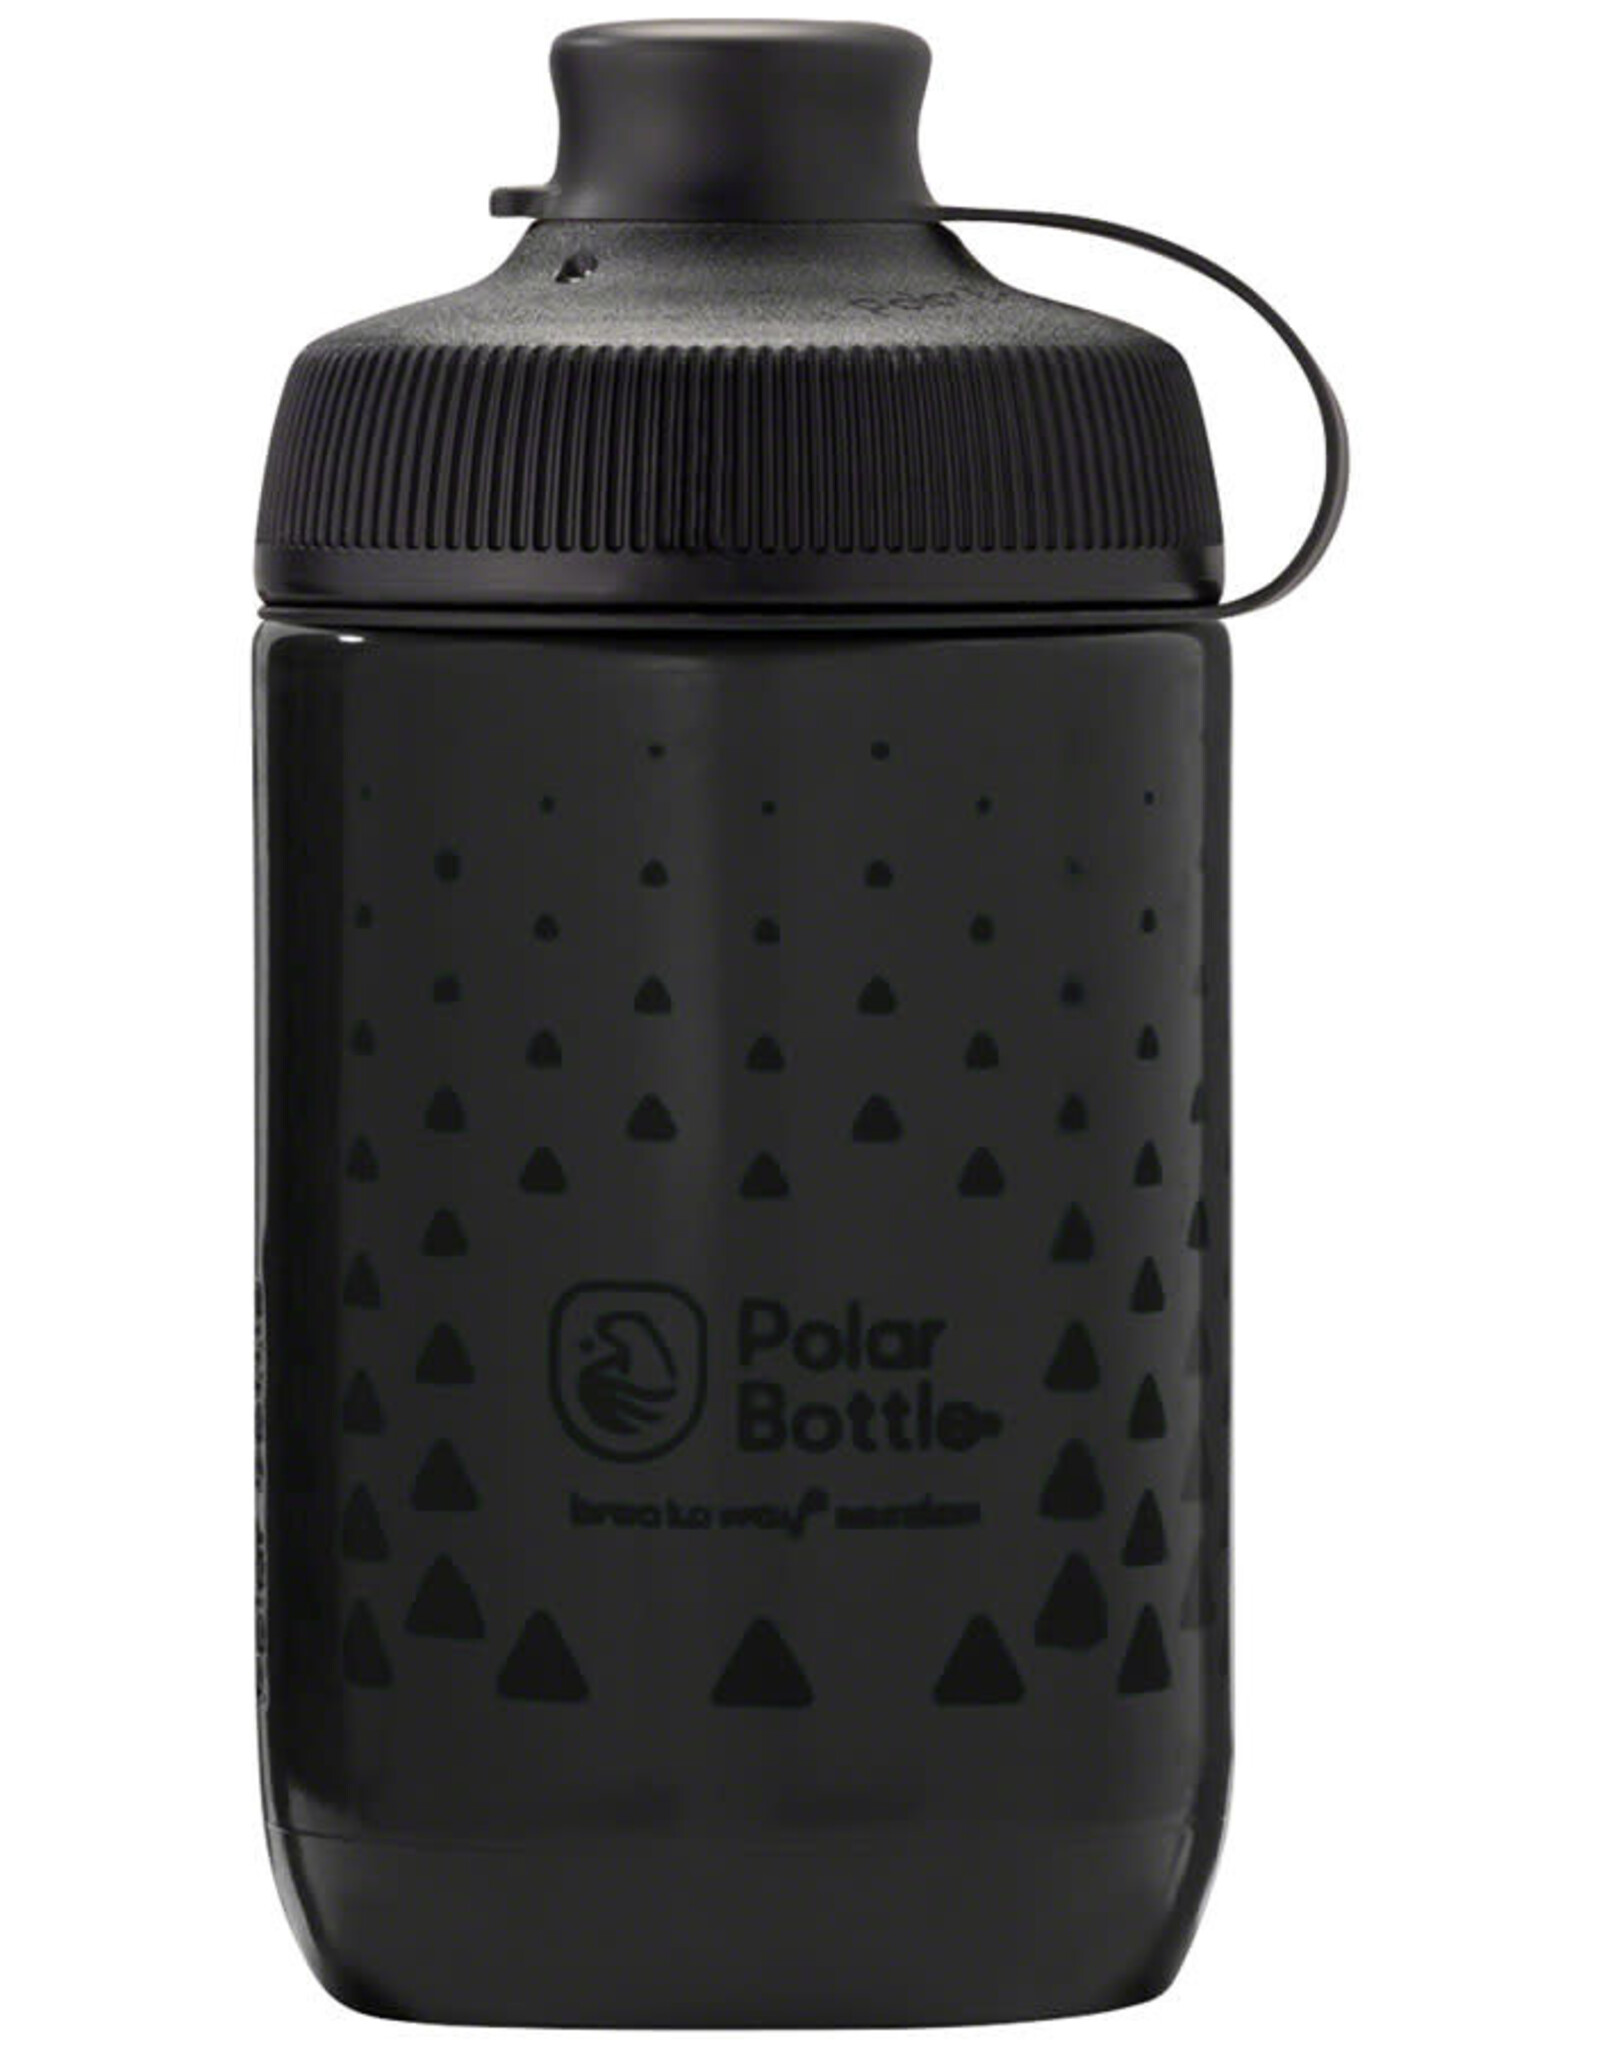 Polar Bottles Polar Bottles Session Muck Apex Water Bottle - Charcoal/Black, 15oz